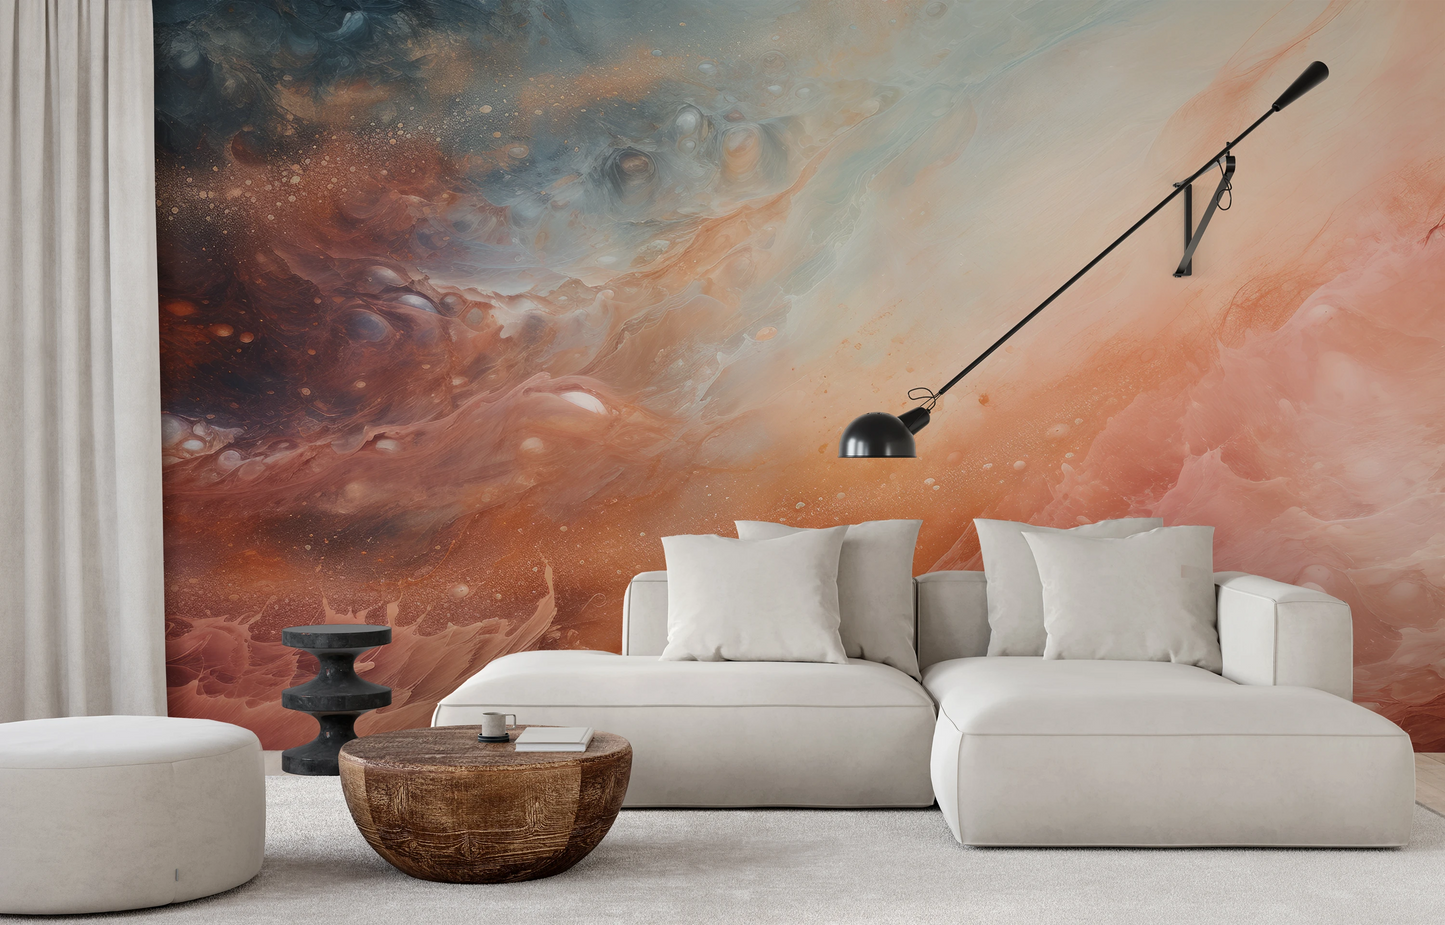 Fototapeta artystyczna o nazwie Solar Nebula pokazana w aranżacji wnętrza.